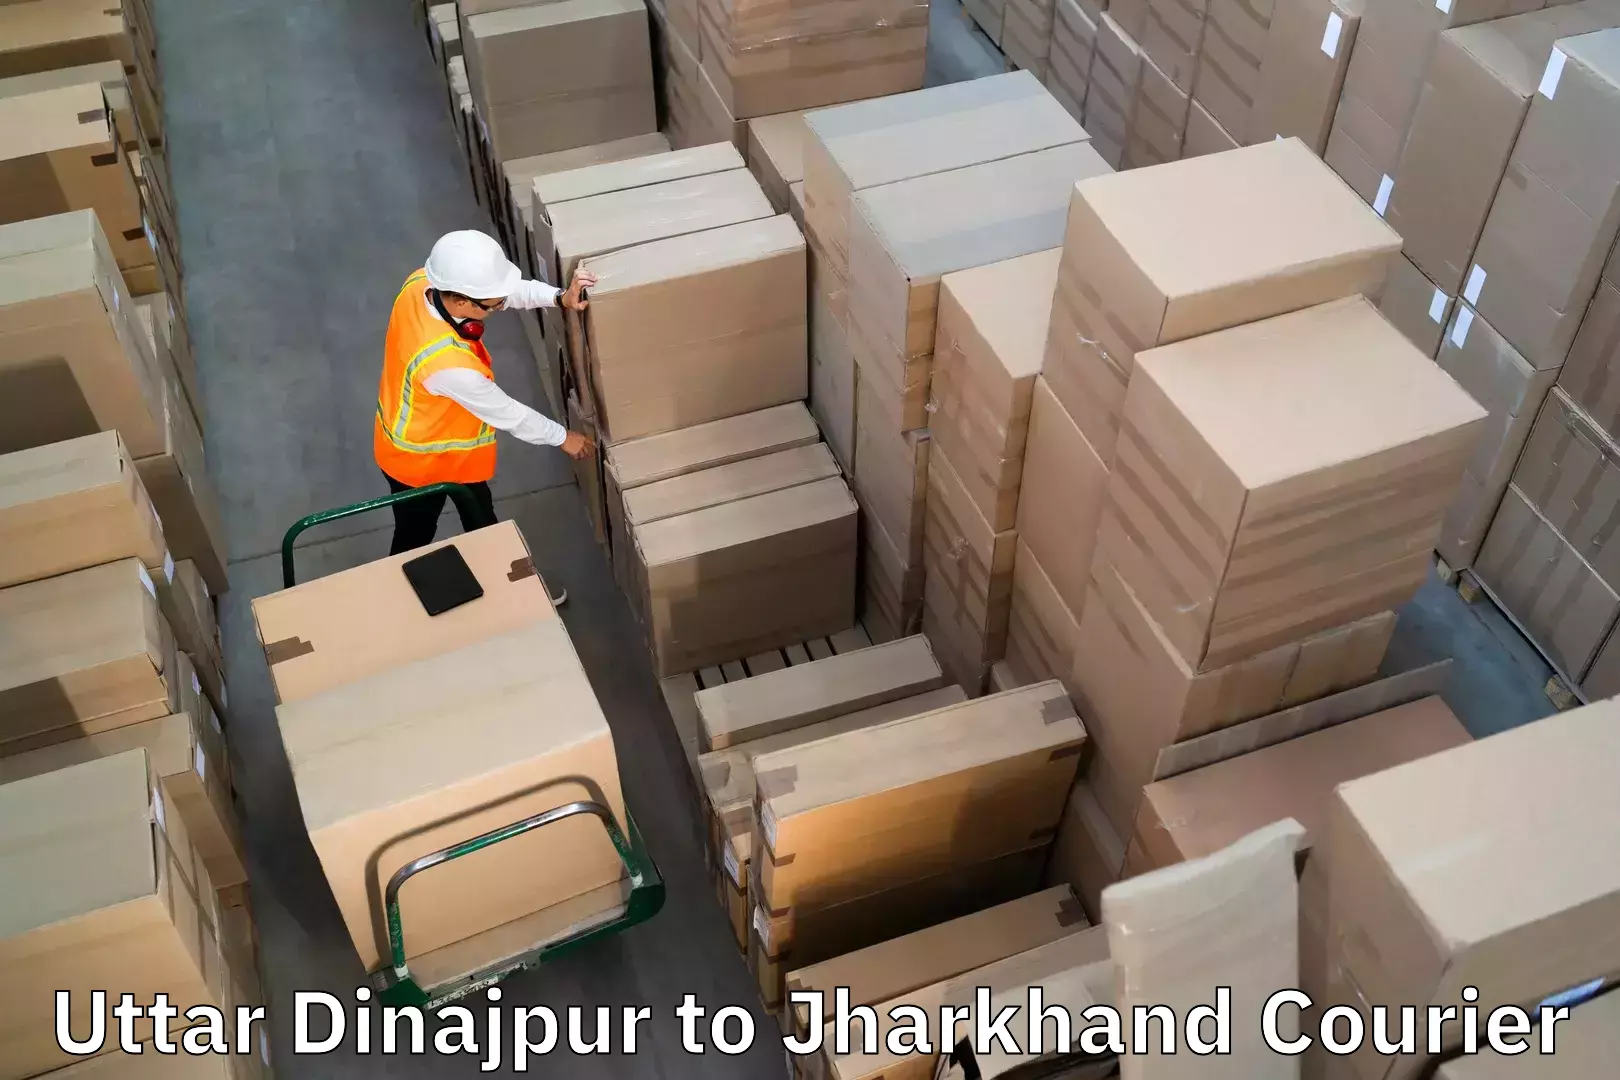 Baggage delivery estimate Uttar Dinajpur to Garhwa